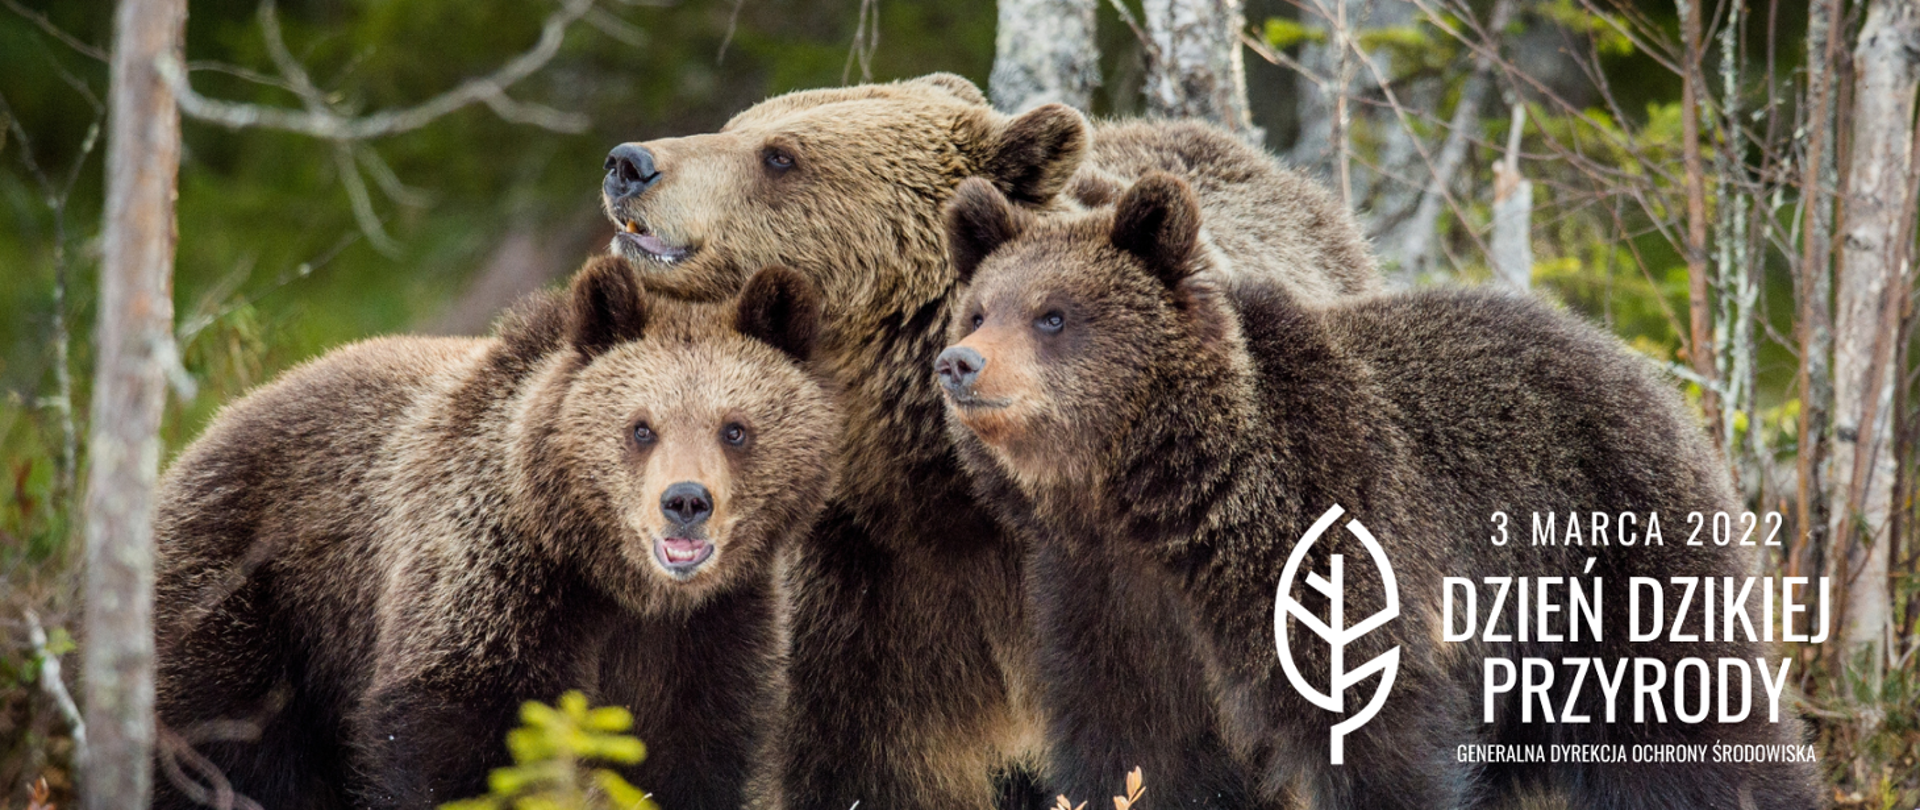 Niedźwiedzie brunatne w lesie. Samica niedźwiedzia z młodymi.